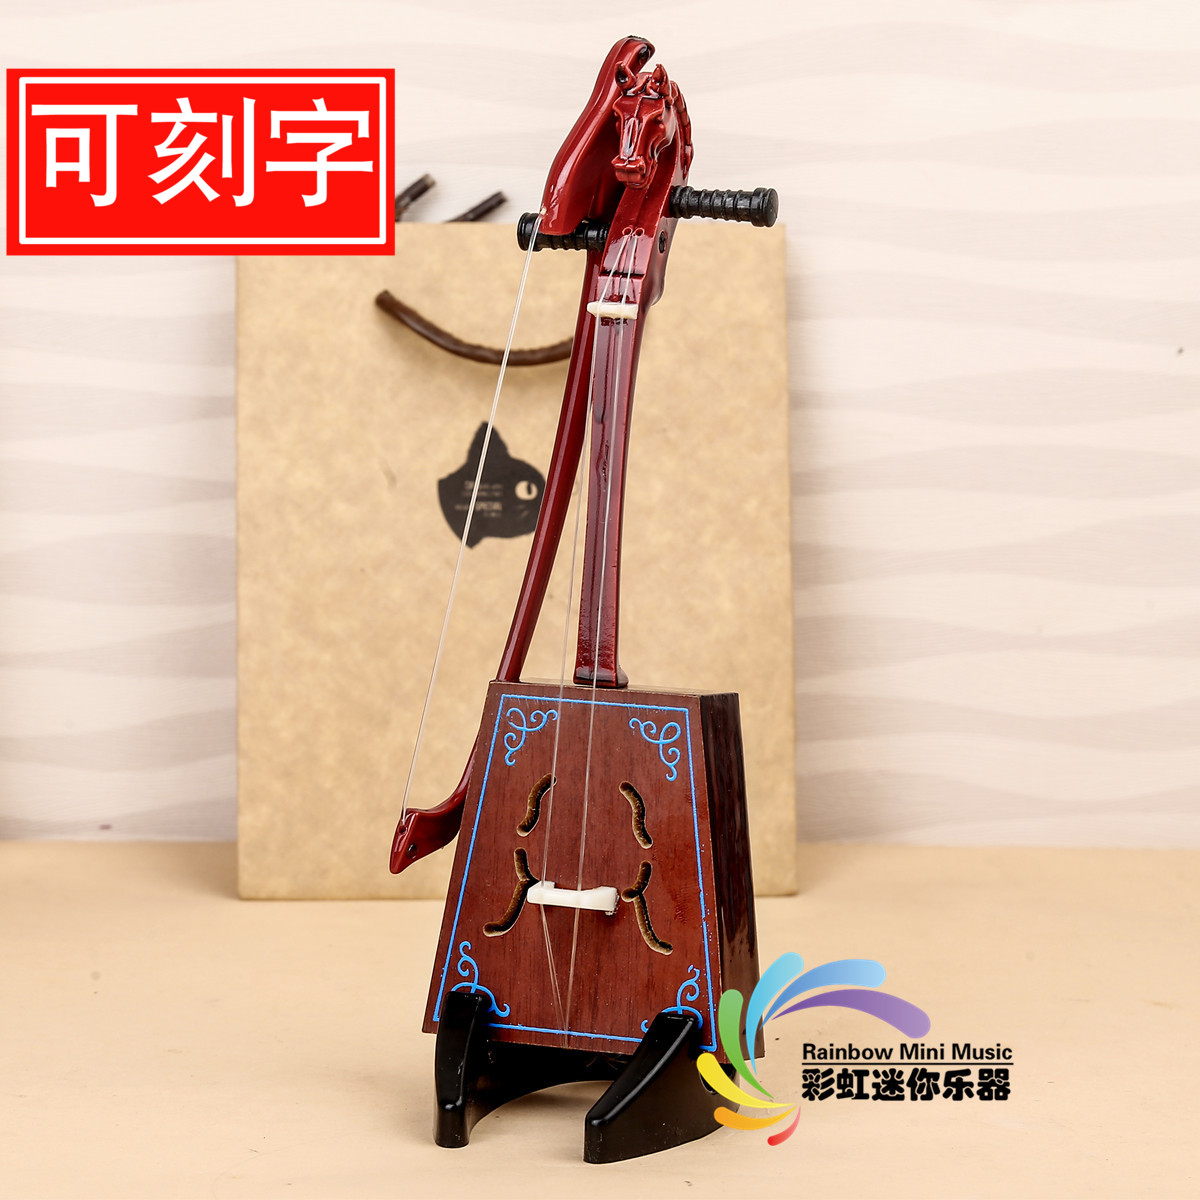 可刻字手工制作微缩迷你马头琴模型民族乐器模型摆件中国特色礼物